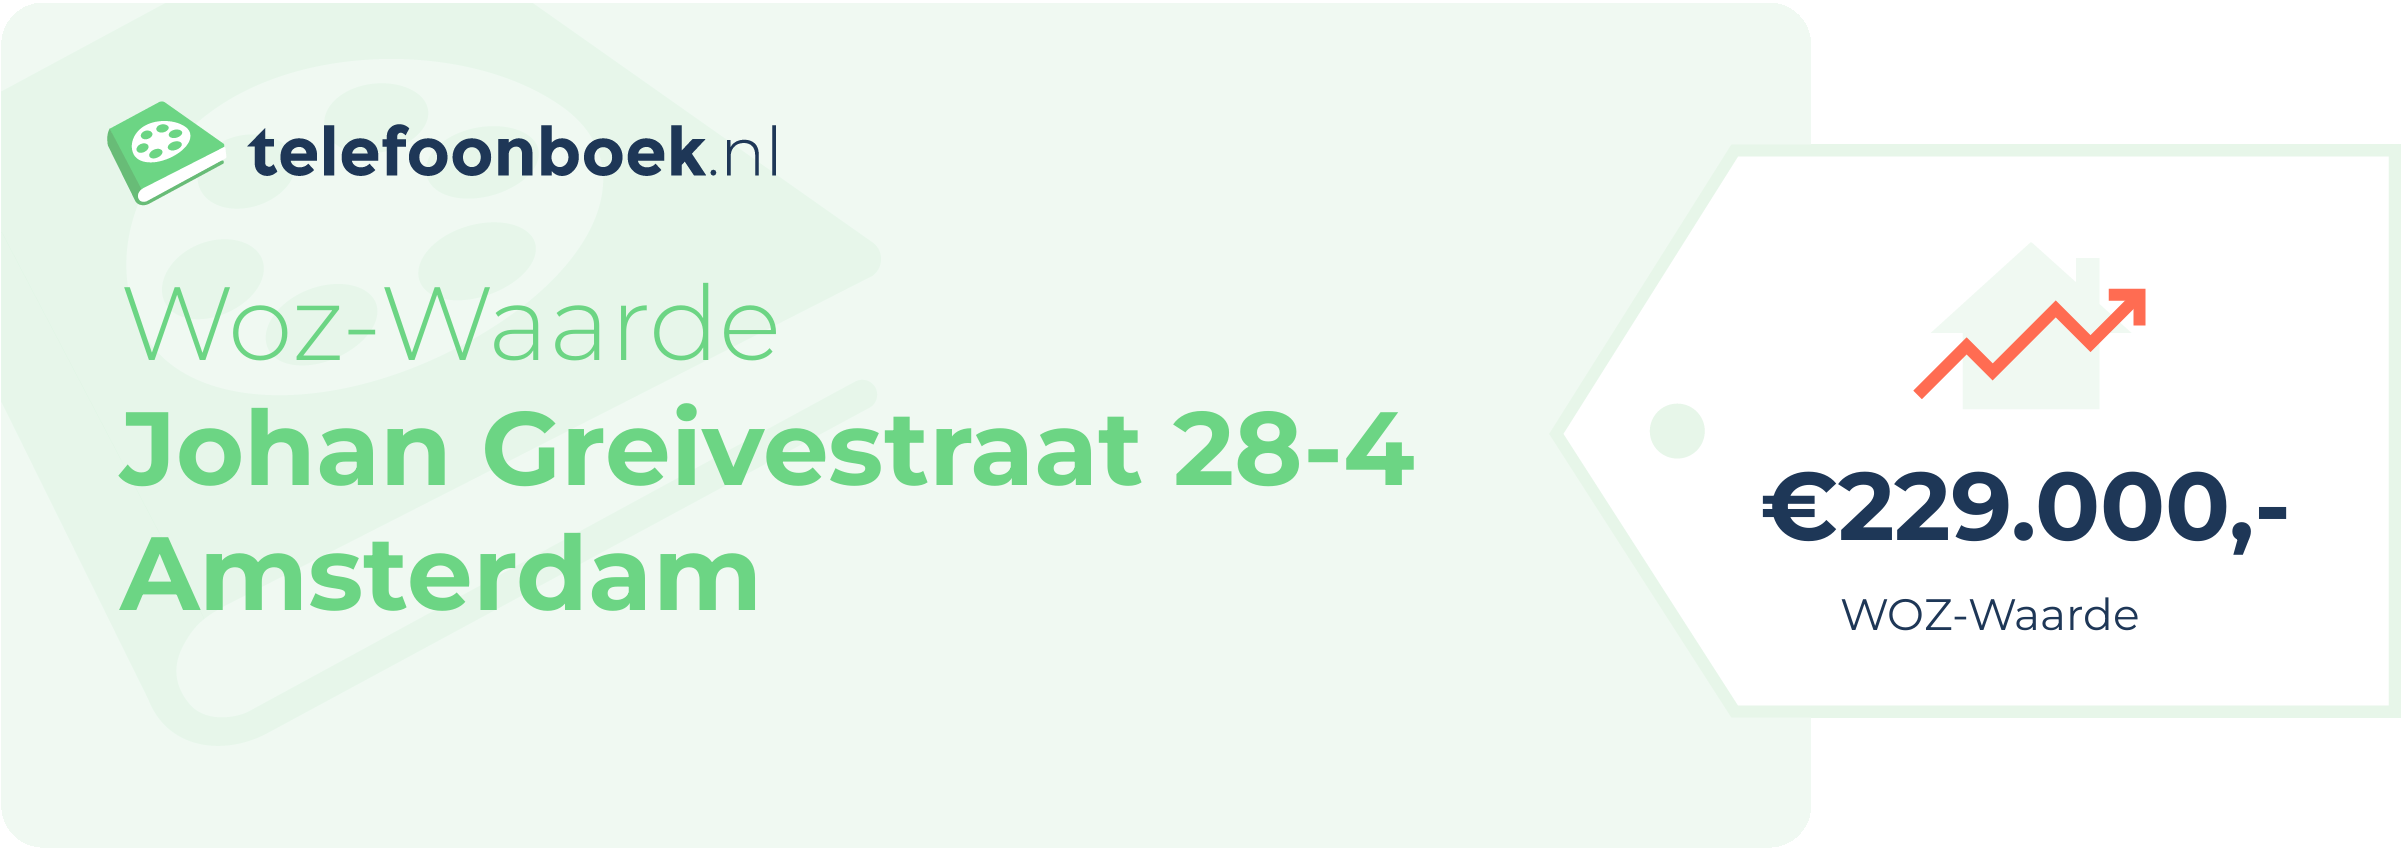 WOZ-waarde Johan Greivestraat 28-4 Amsterdam